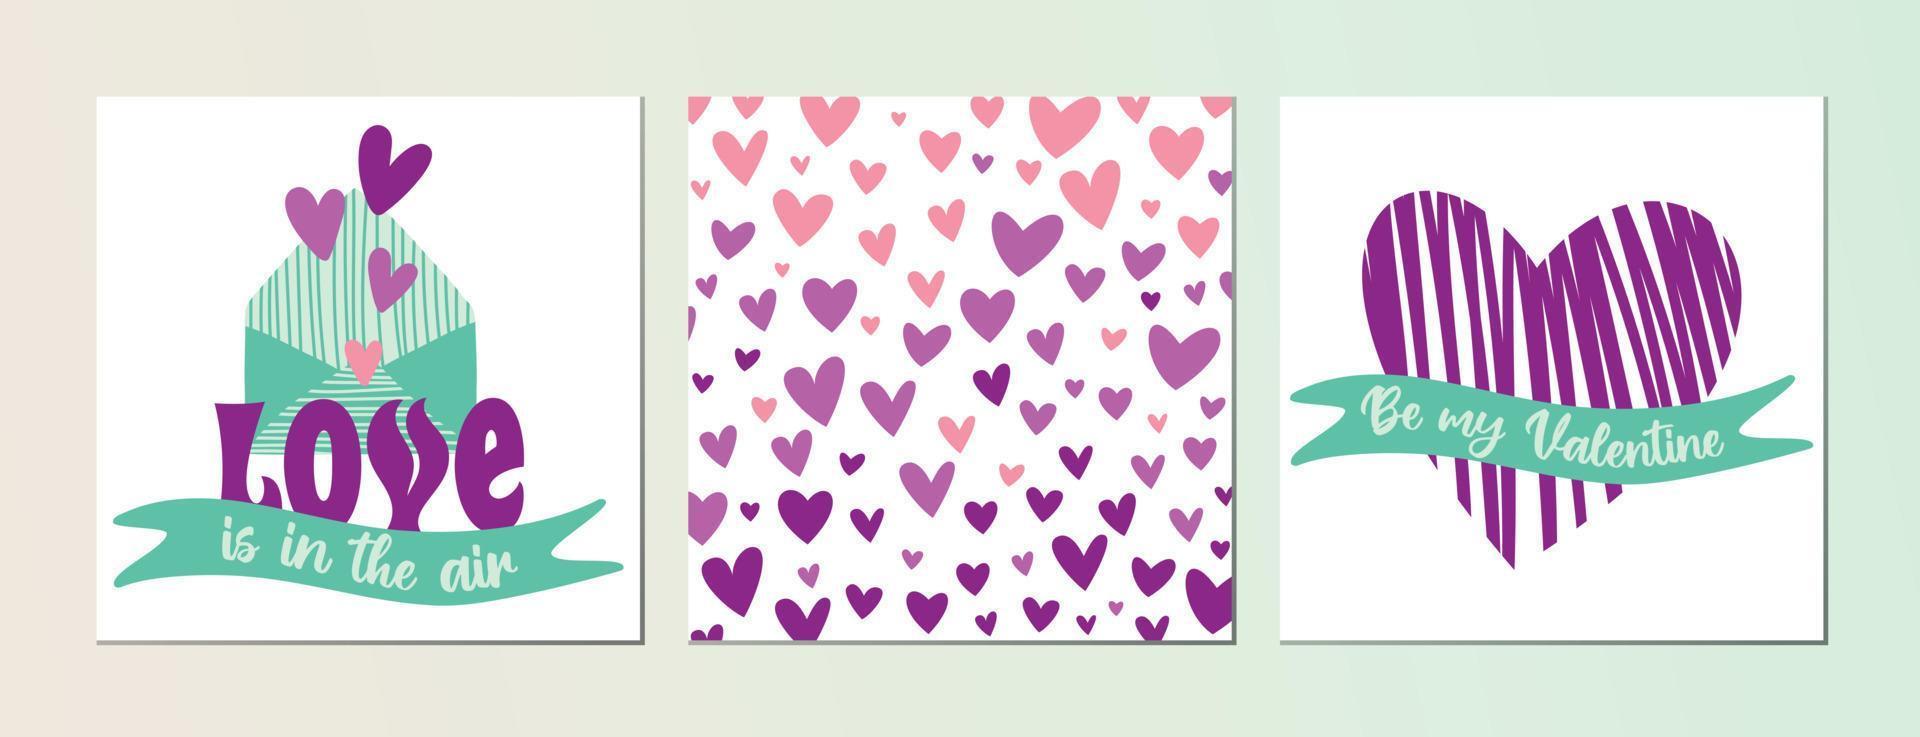 satz von valentinstaggrußkarten und social-media-beiträgen. lila und rosa Herzen, grüne Bänder, Umschlag vektor